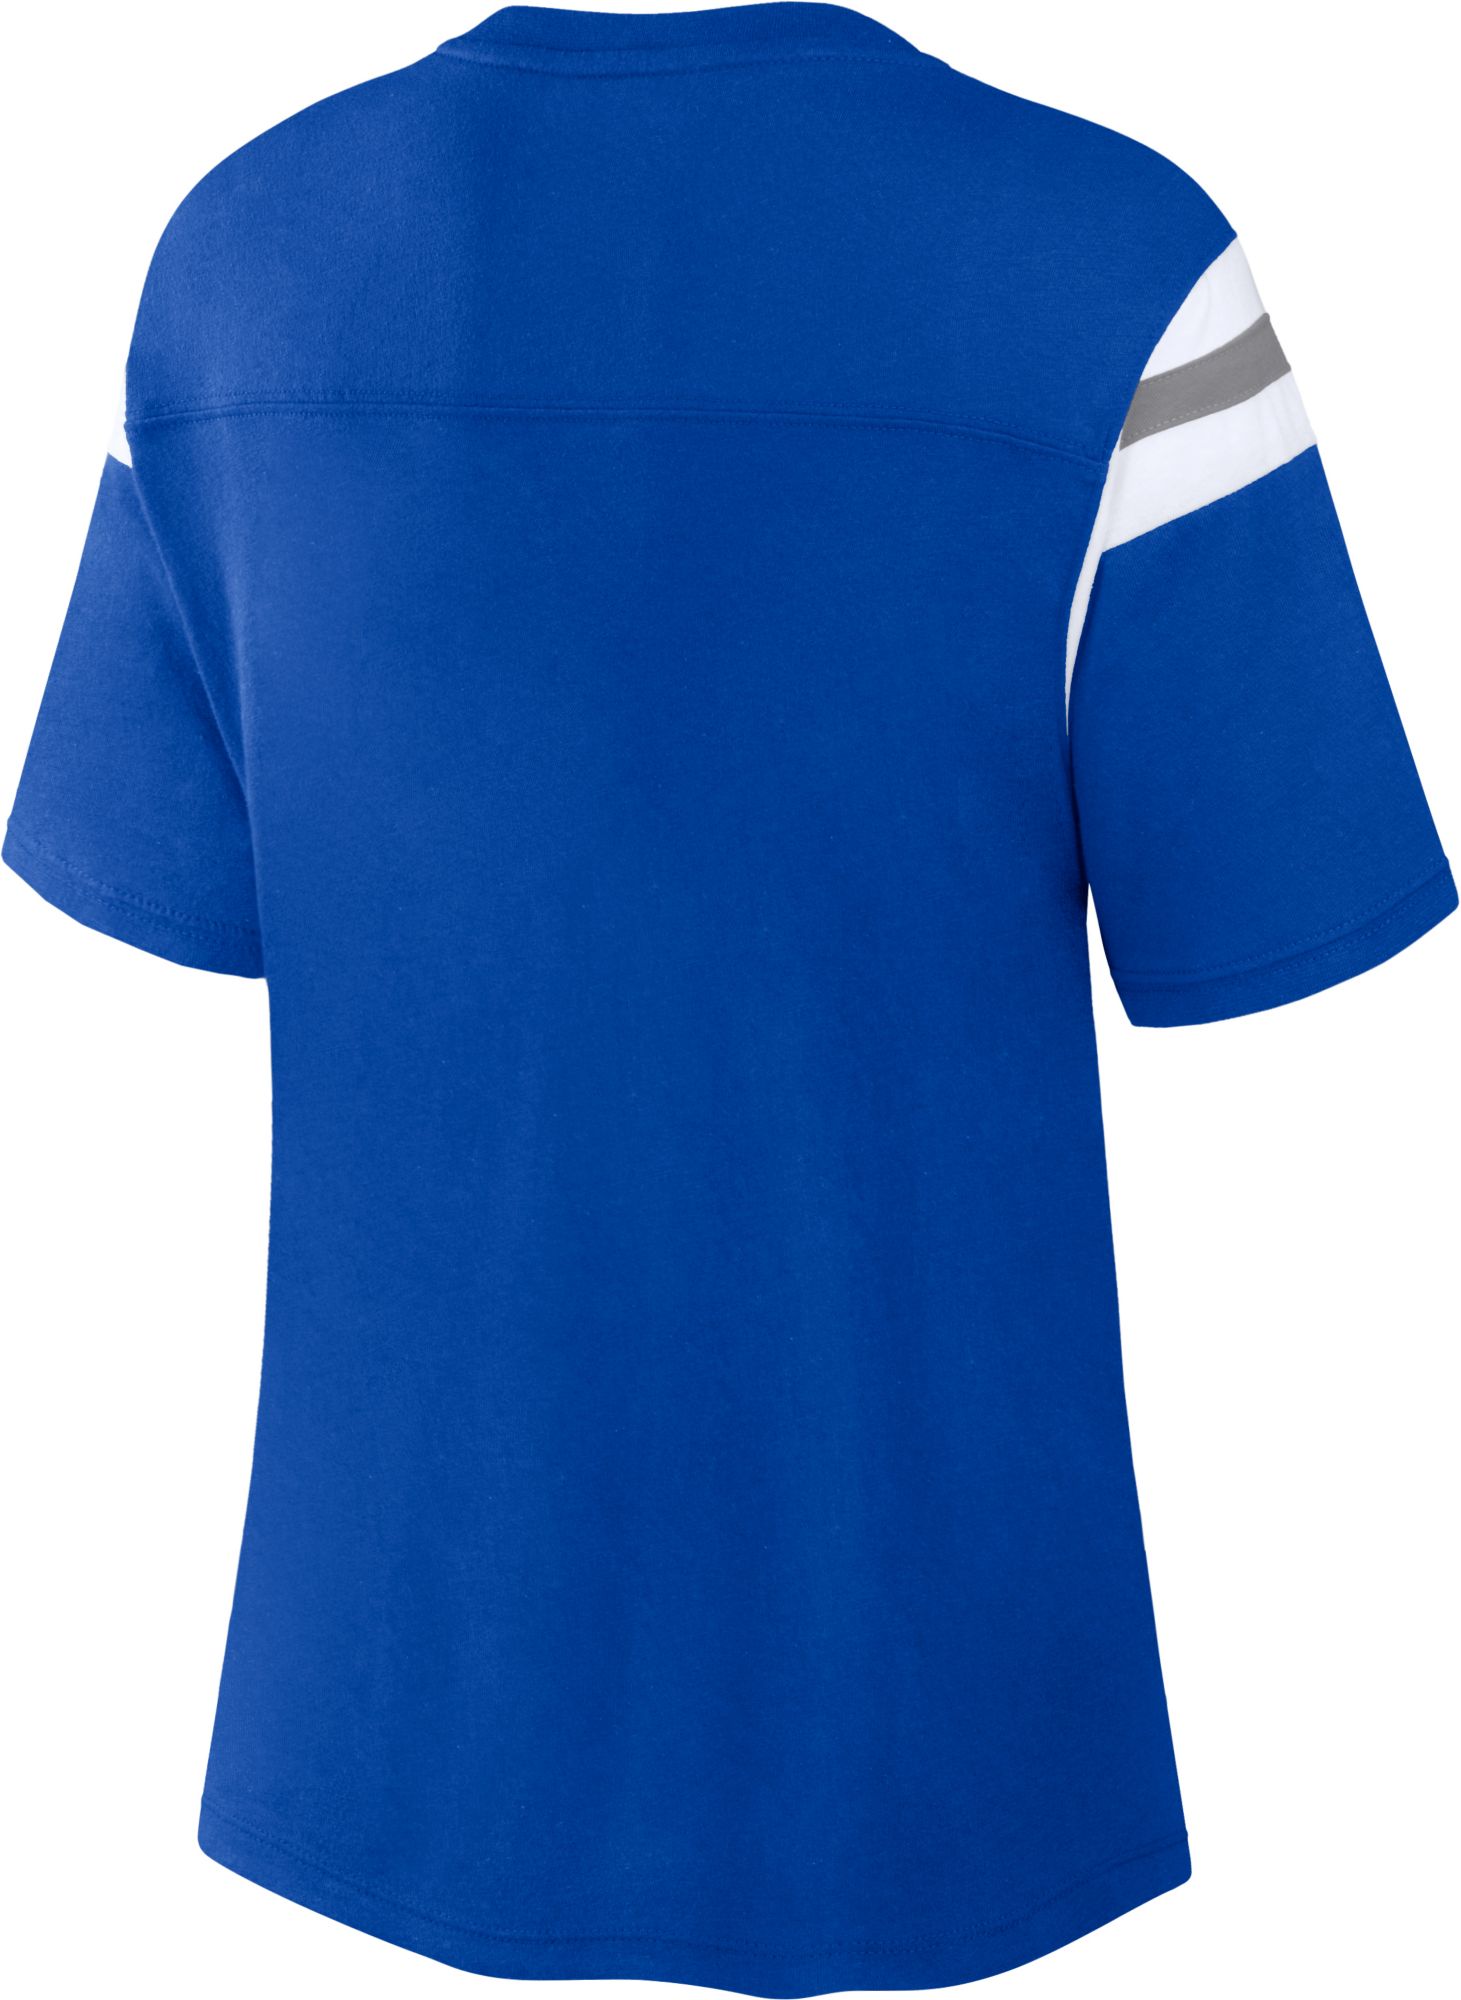 Colorblock T-shirt, Blue